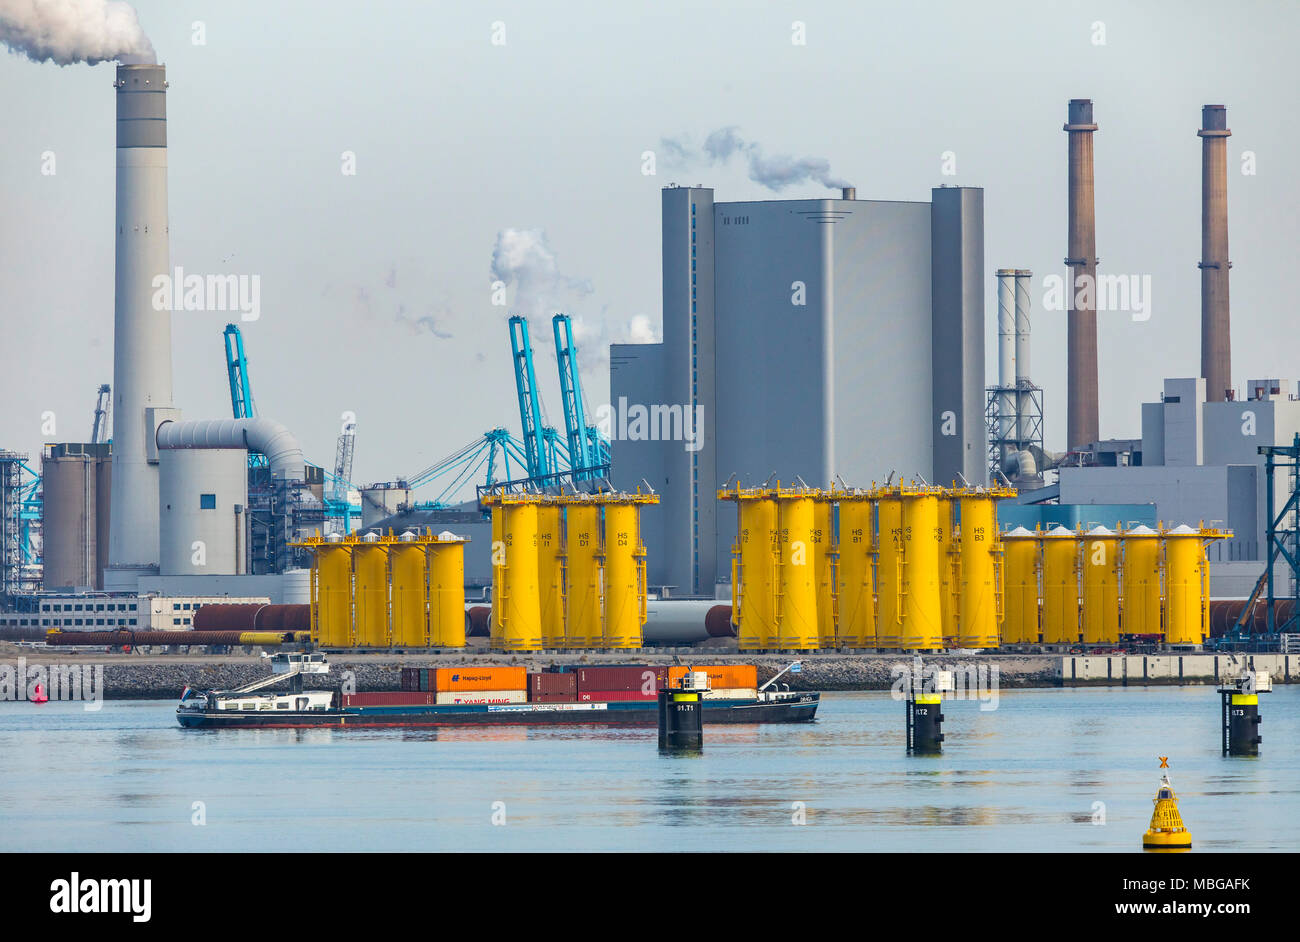 Der Hafen von Rotterdam, Niederlande, Deep-sea port Maasvlakte 2, auf einer künstlich geschaffenen Land Bereich vor der ursprünglichen Küste, die Uniper pow Stockfoto